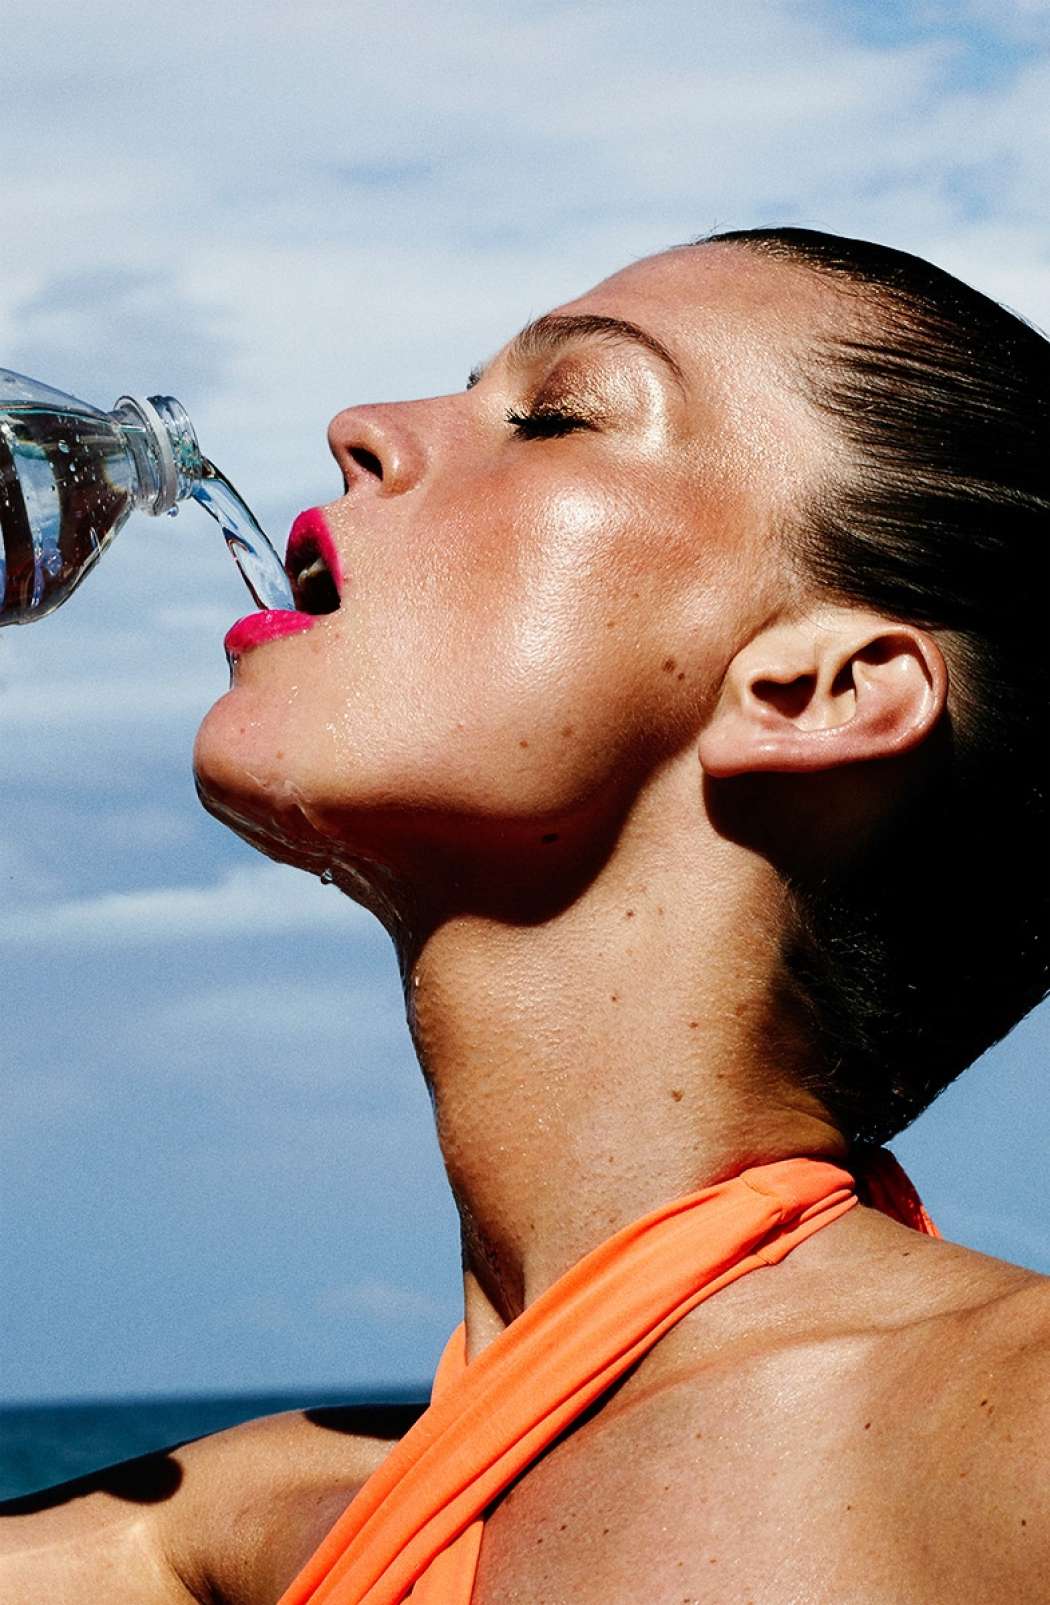 woman-drinking-water-model-sports-bottle